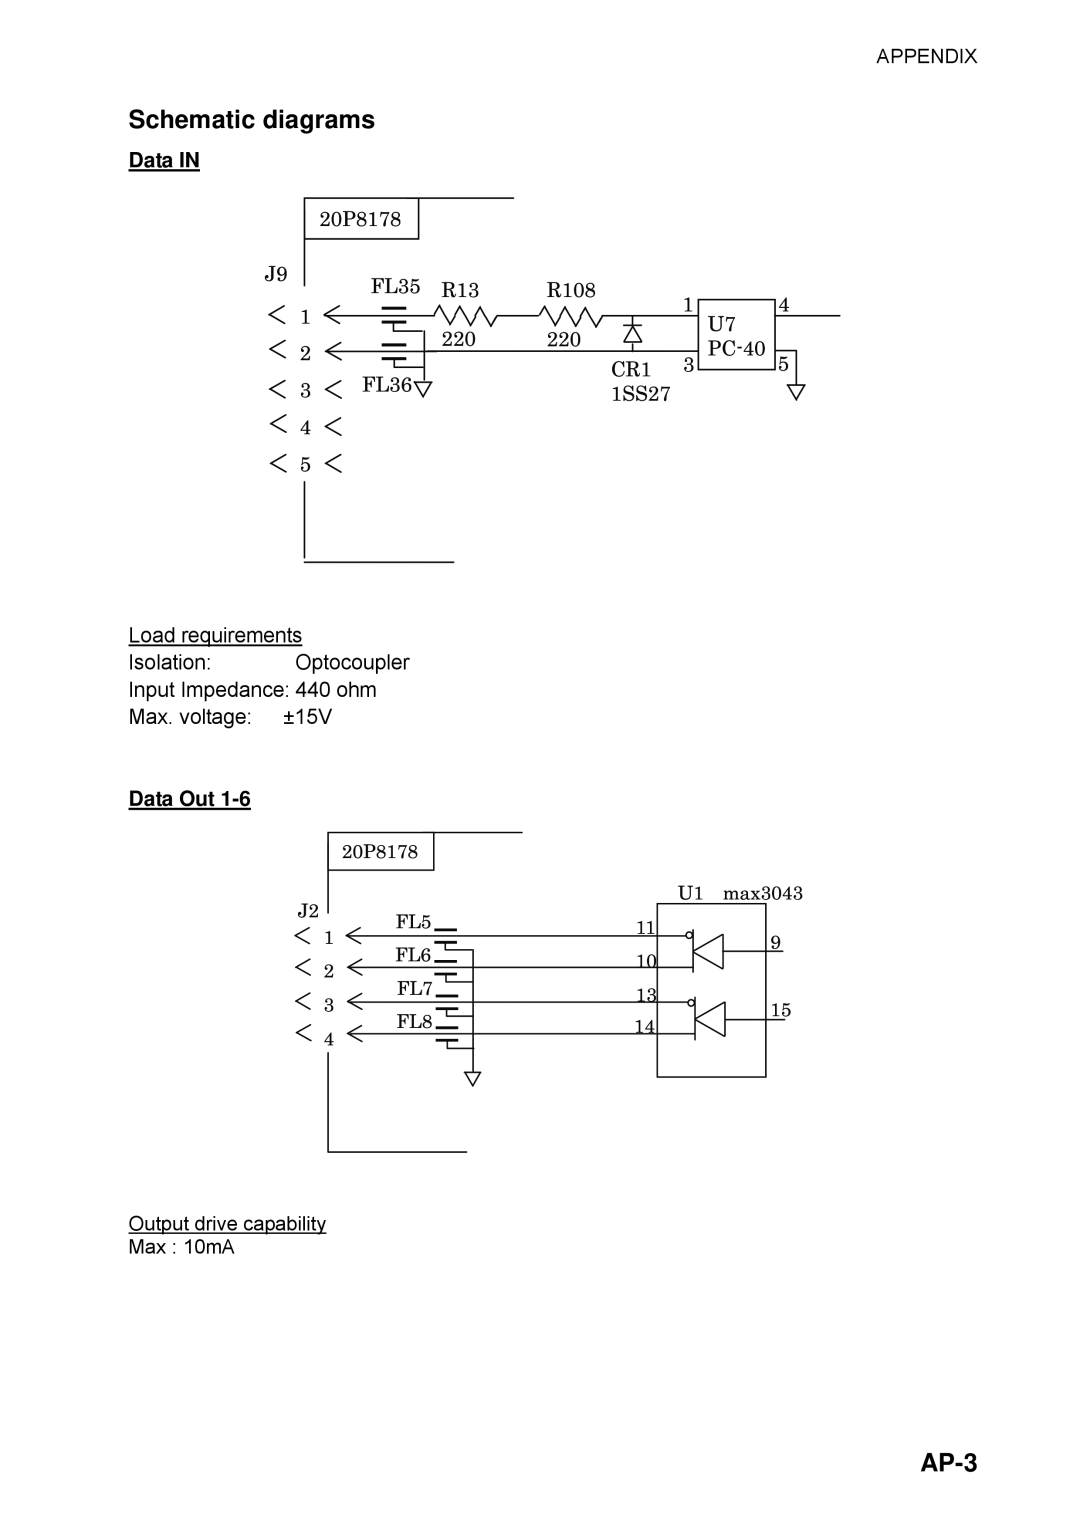 Furuno SC-110 manual Schematic diagrams, AP-3, J92120P8178FL35220R13, Data IN, Data Out, FL36, 10U1, 220R108 